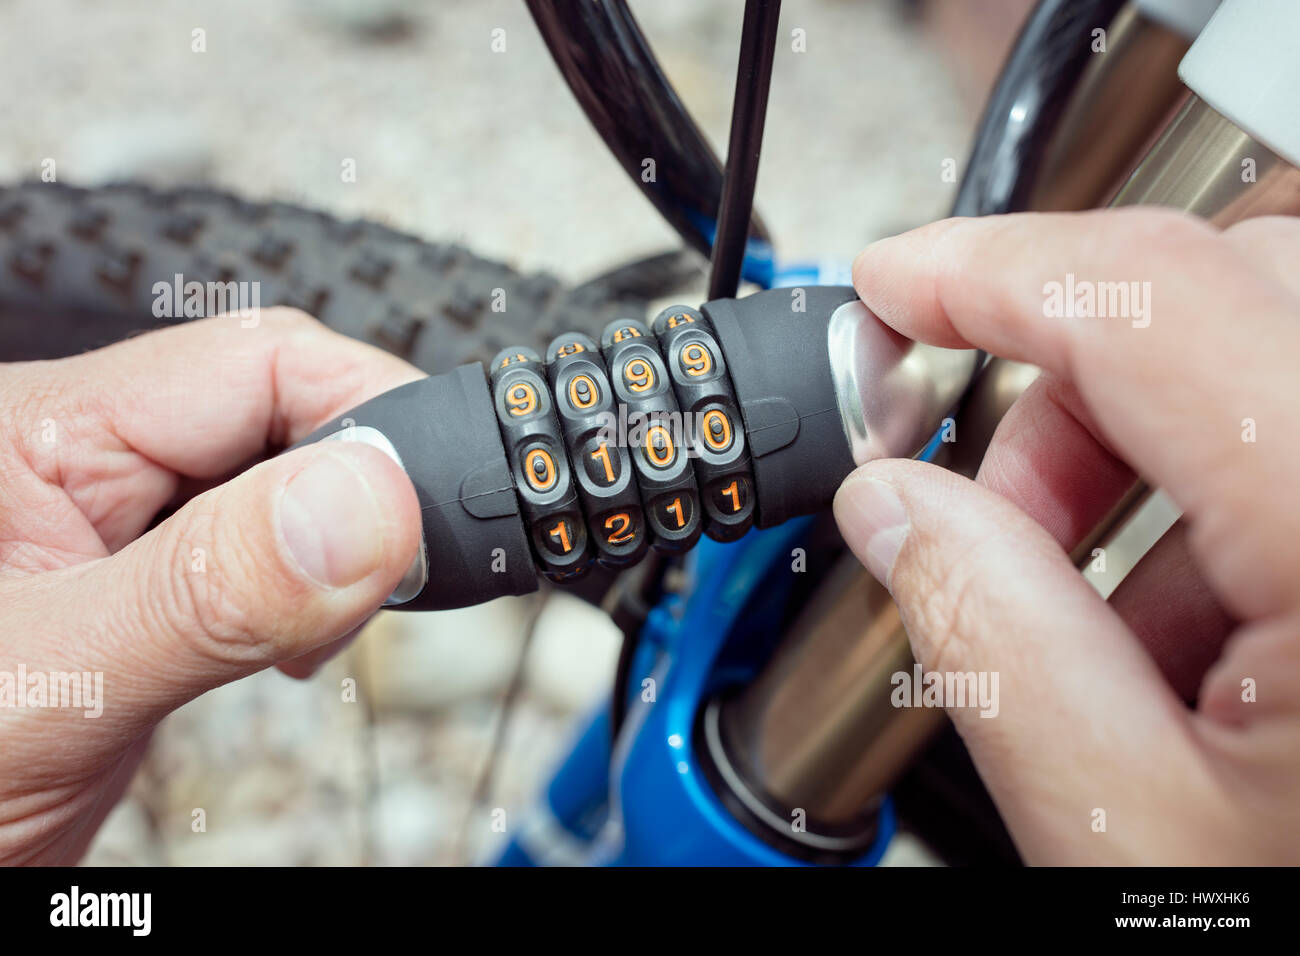 Zahlenschloss Fahrrad Zubehör für Fahrrad-Schutz und Sicherheit Stockfoto